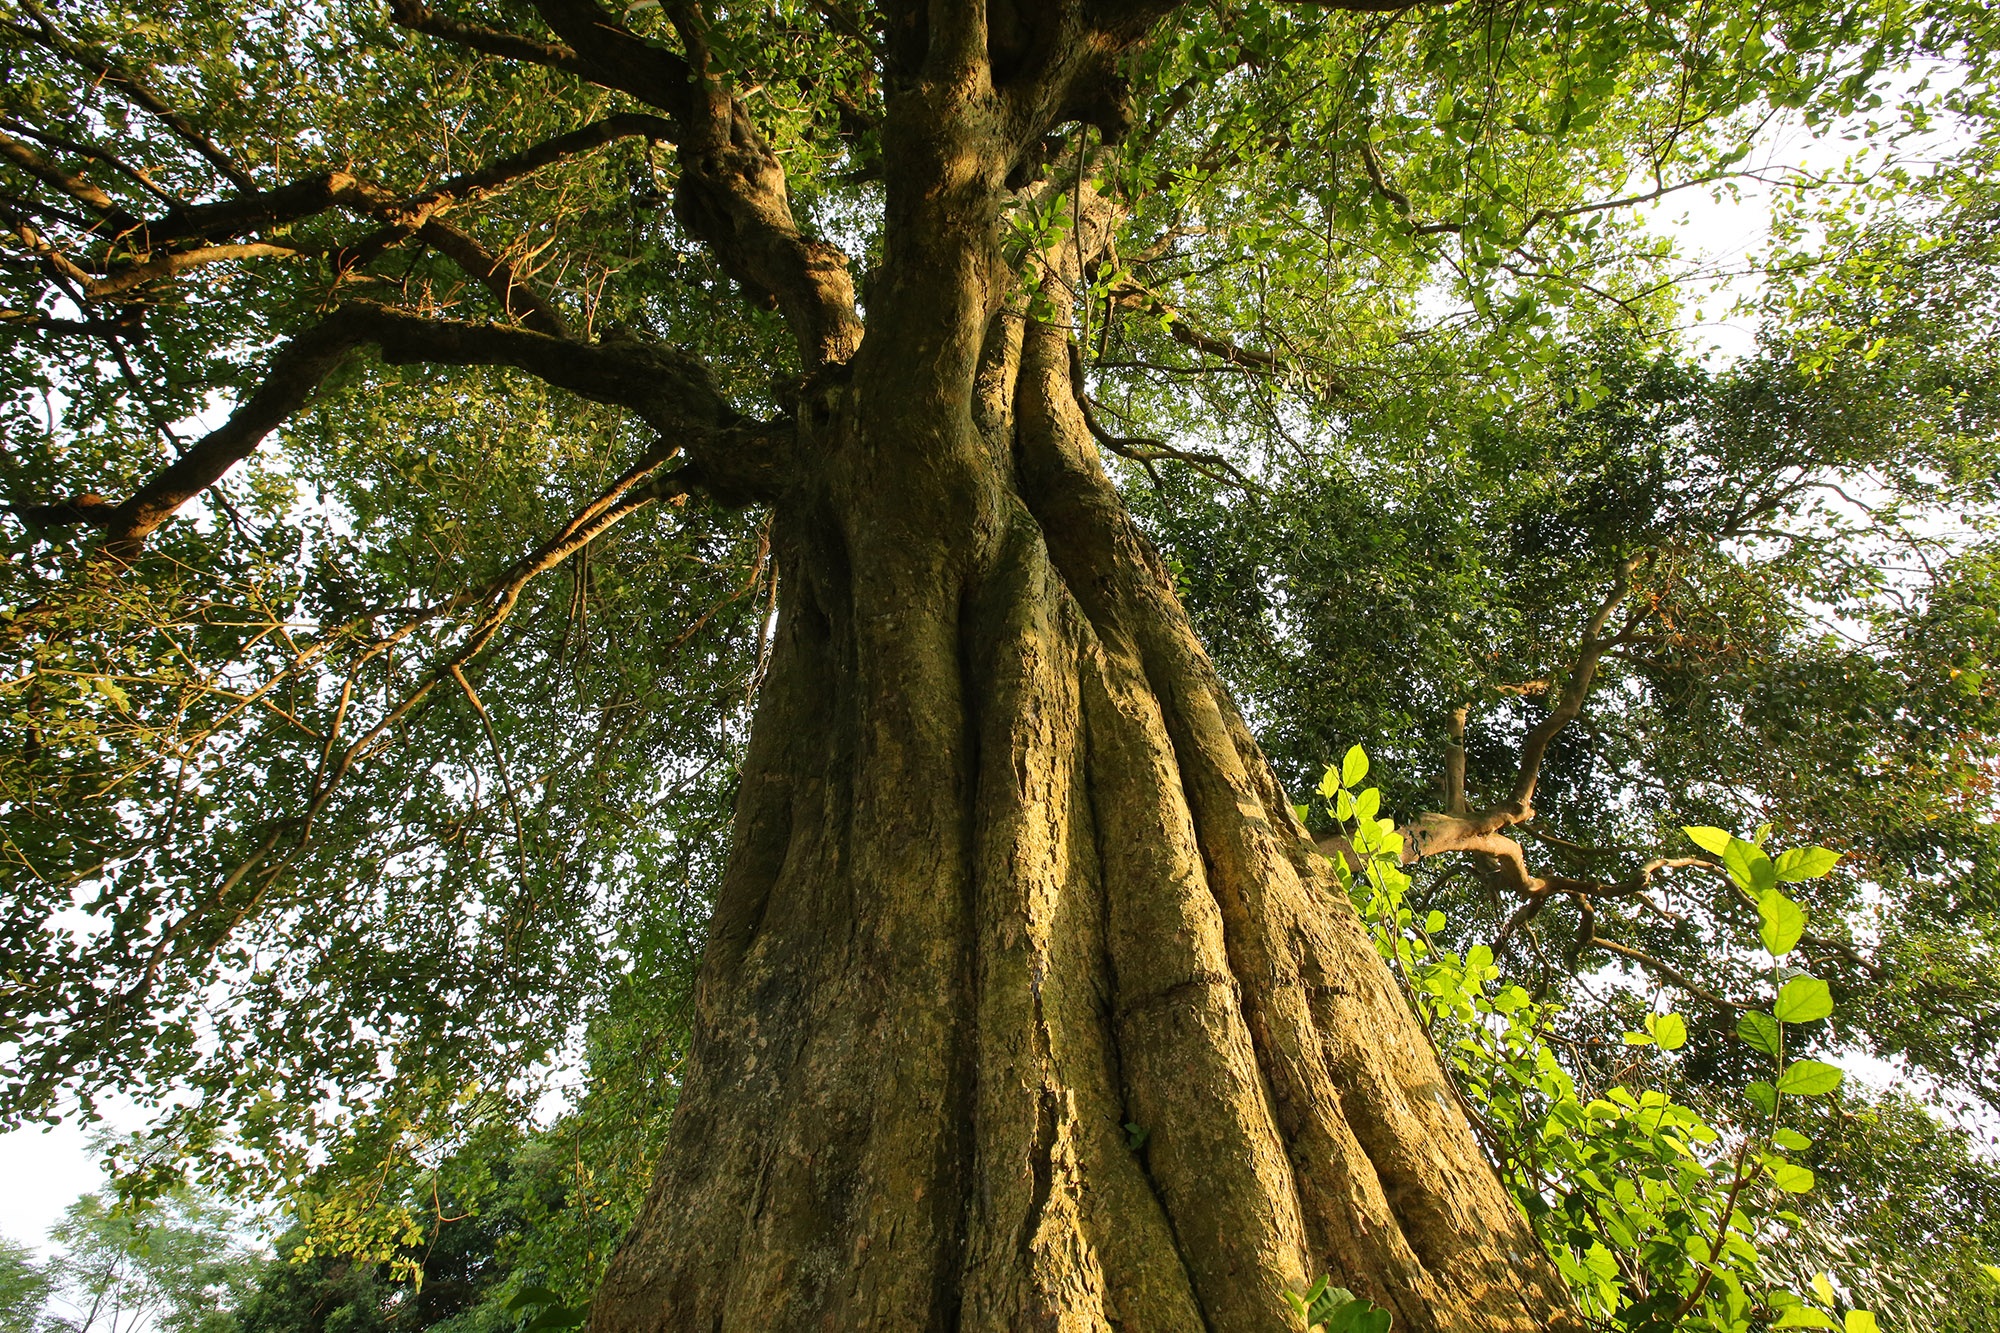 Rặng cây duối cổ hơn 1000 năm tuổi ở Hà Nội - 3